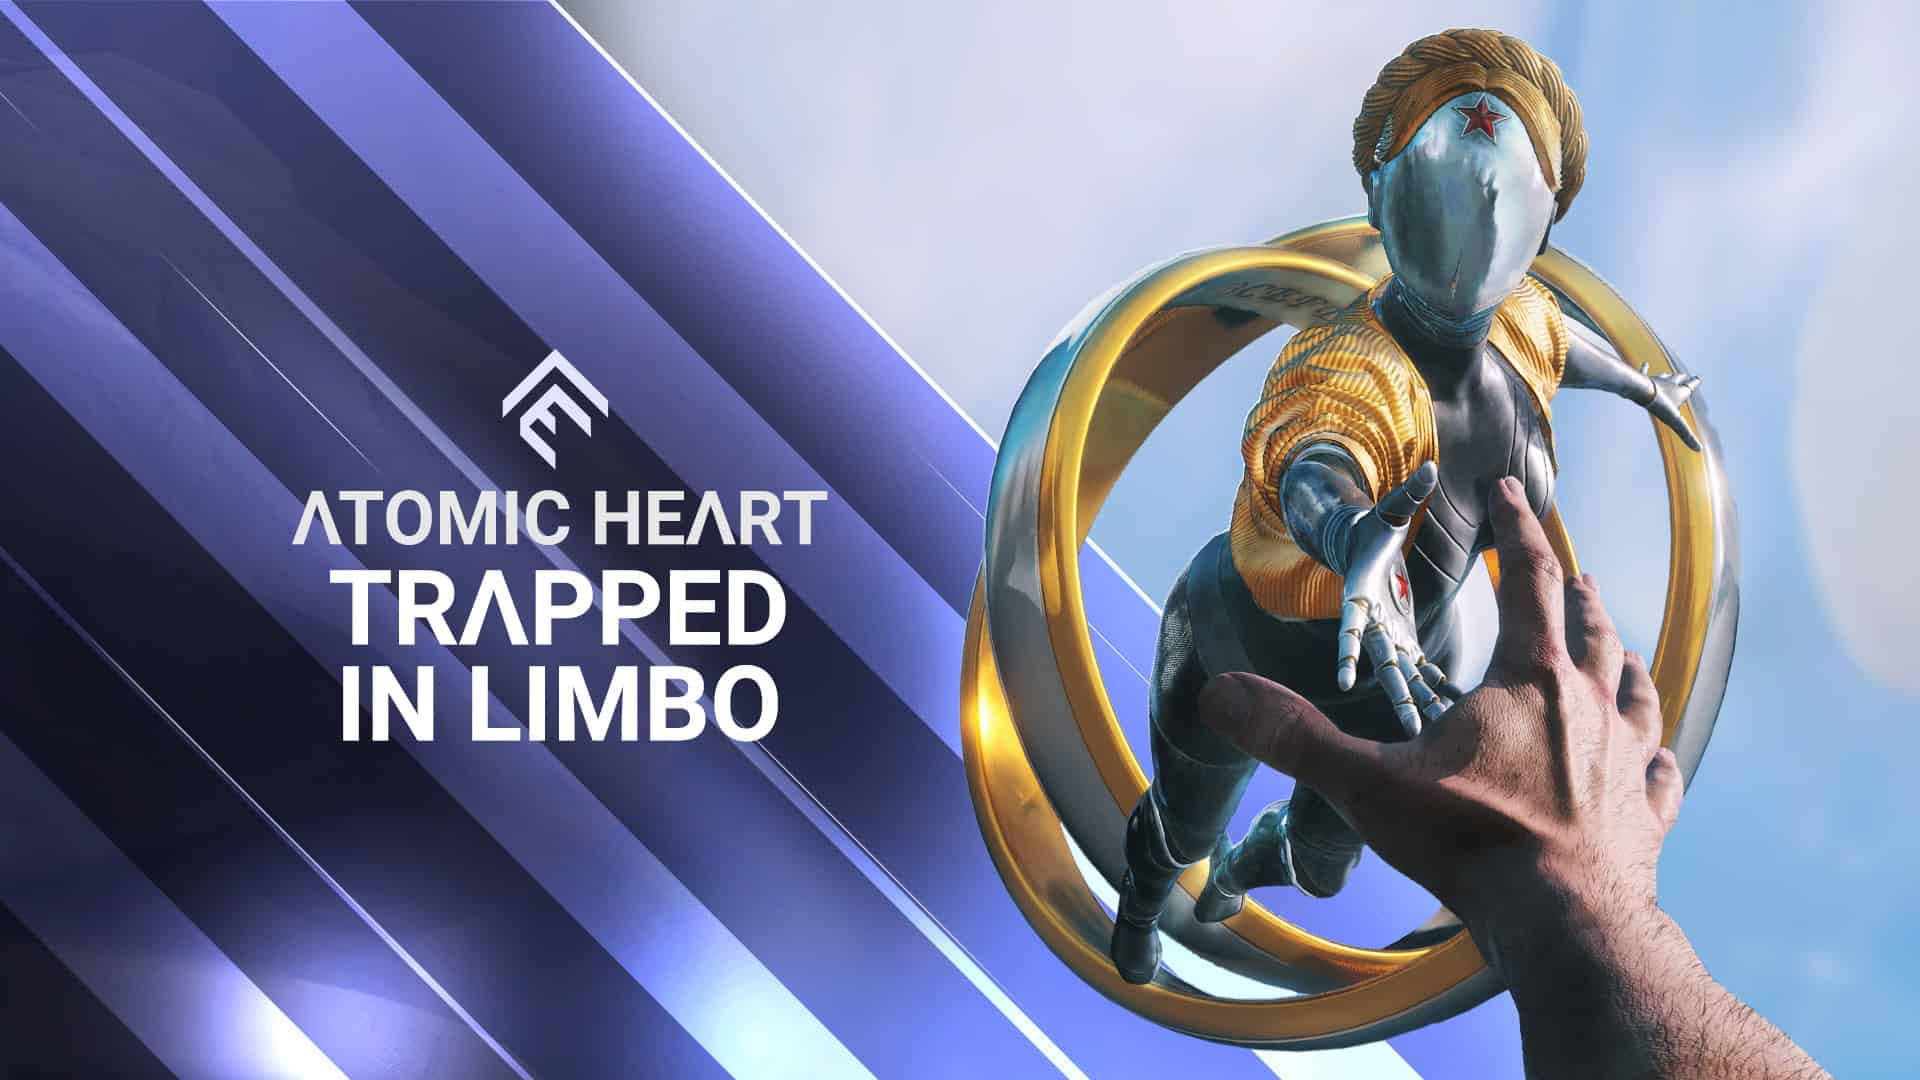 Atomic Heart já passou de 5 milhões de jogadores em apenas 3 semanas